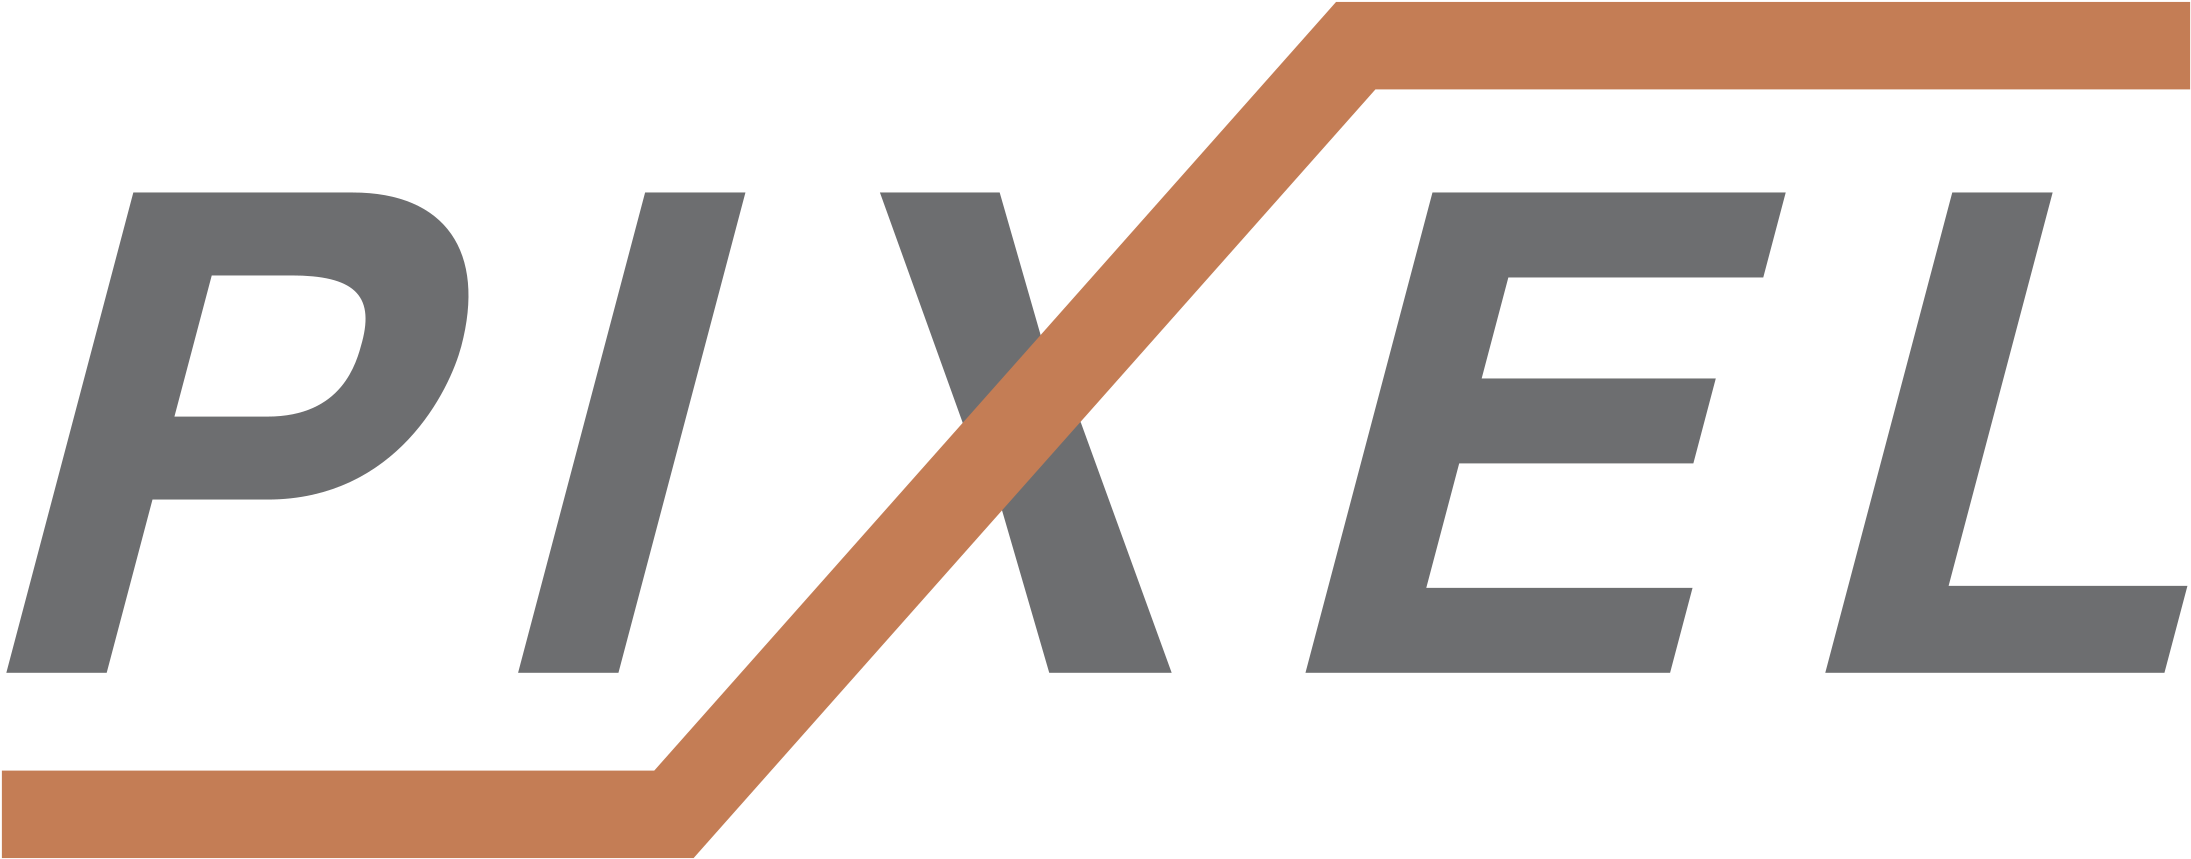 Pixel логотип. Пиксель24 интернет-магазин цифровой техники. Магазин "PIXELHD". Servicepipe лого.